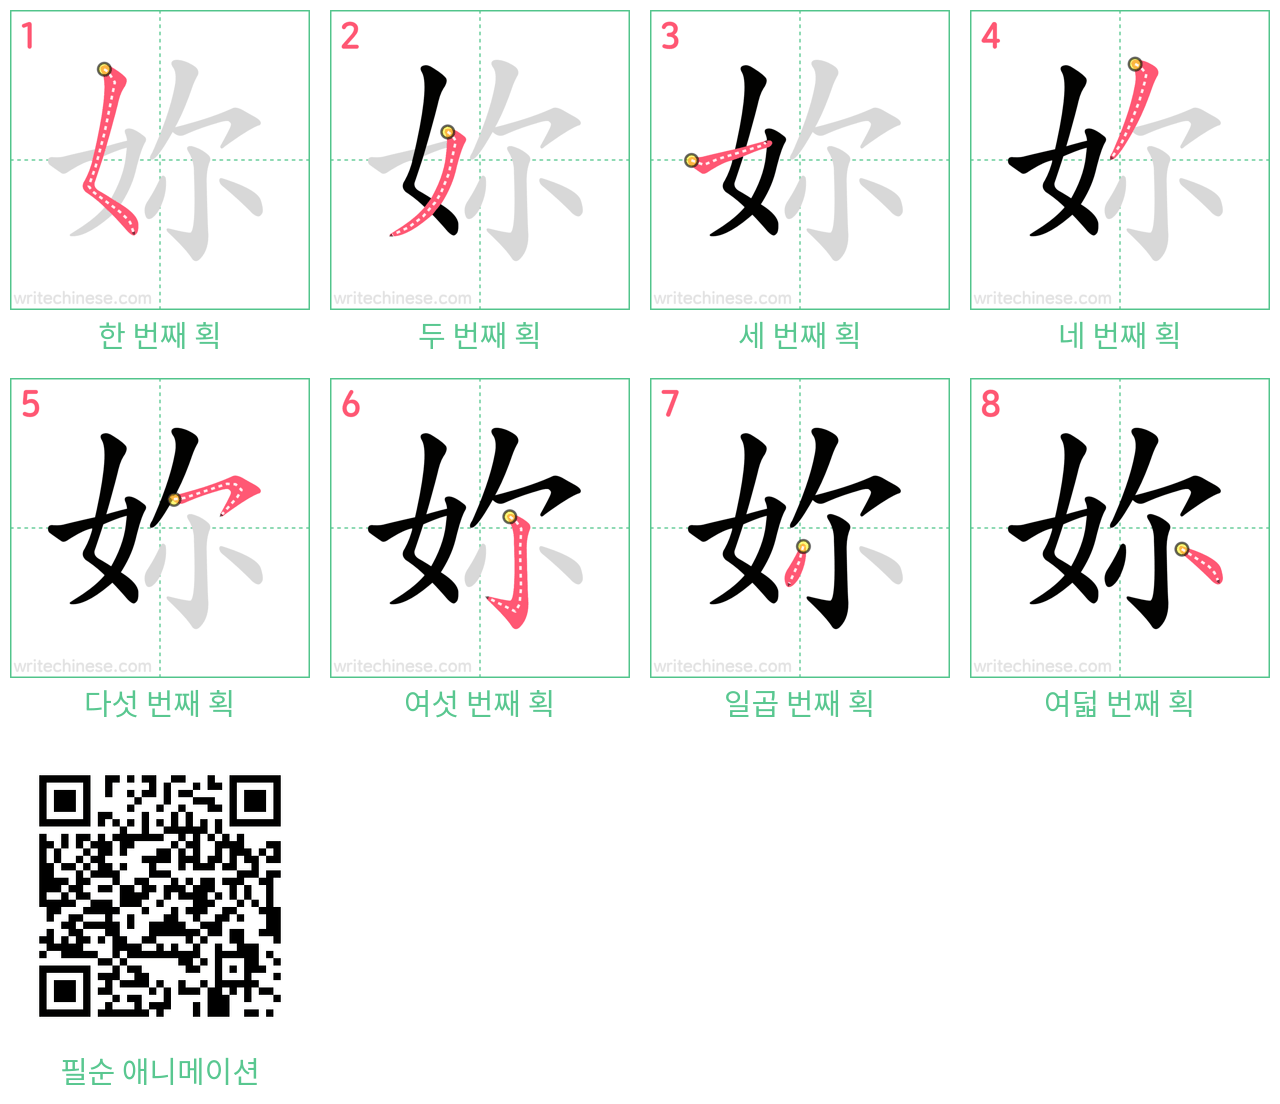 妳 step-by-step stroke order diagrams